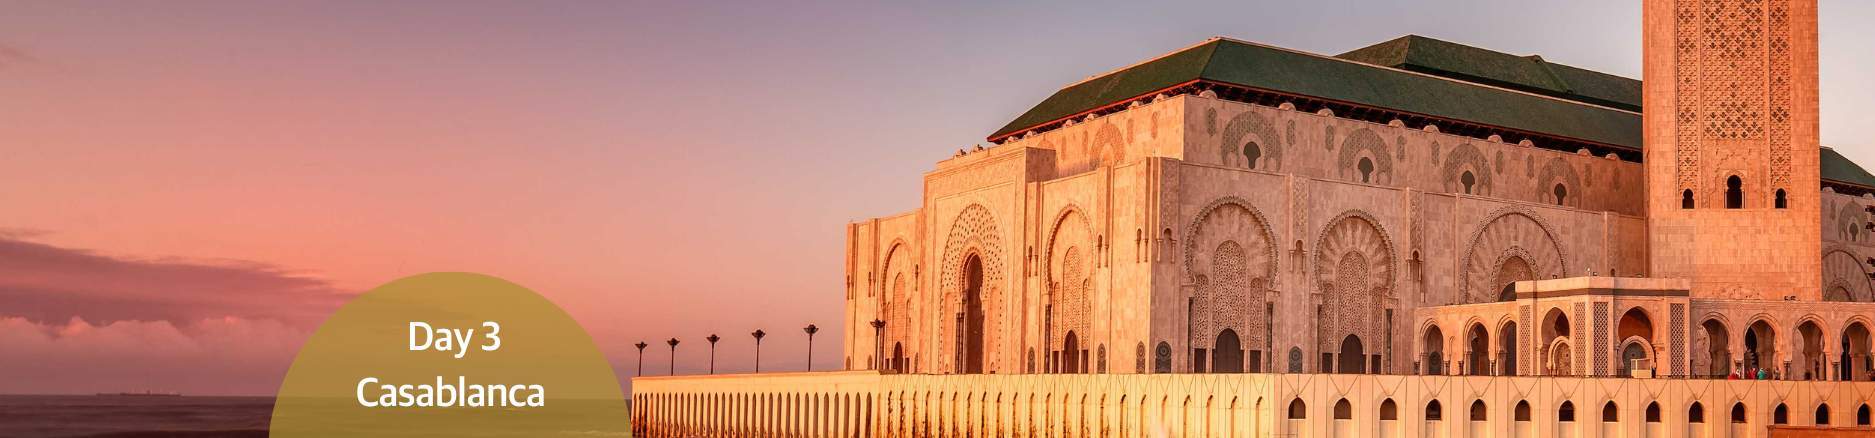 Casablanca_Hassan II Mosque